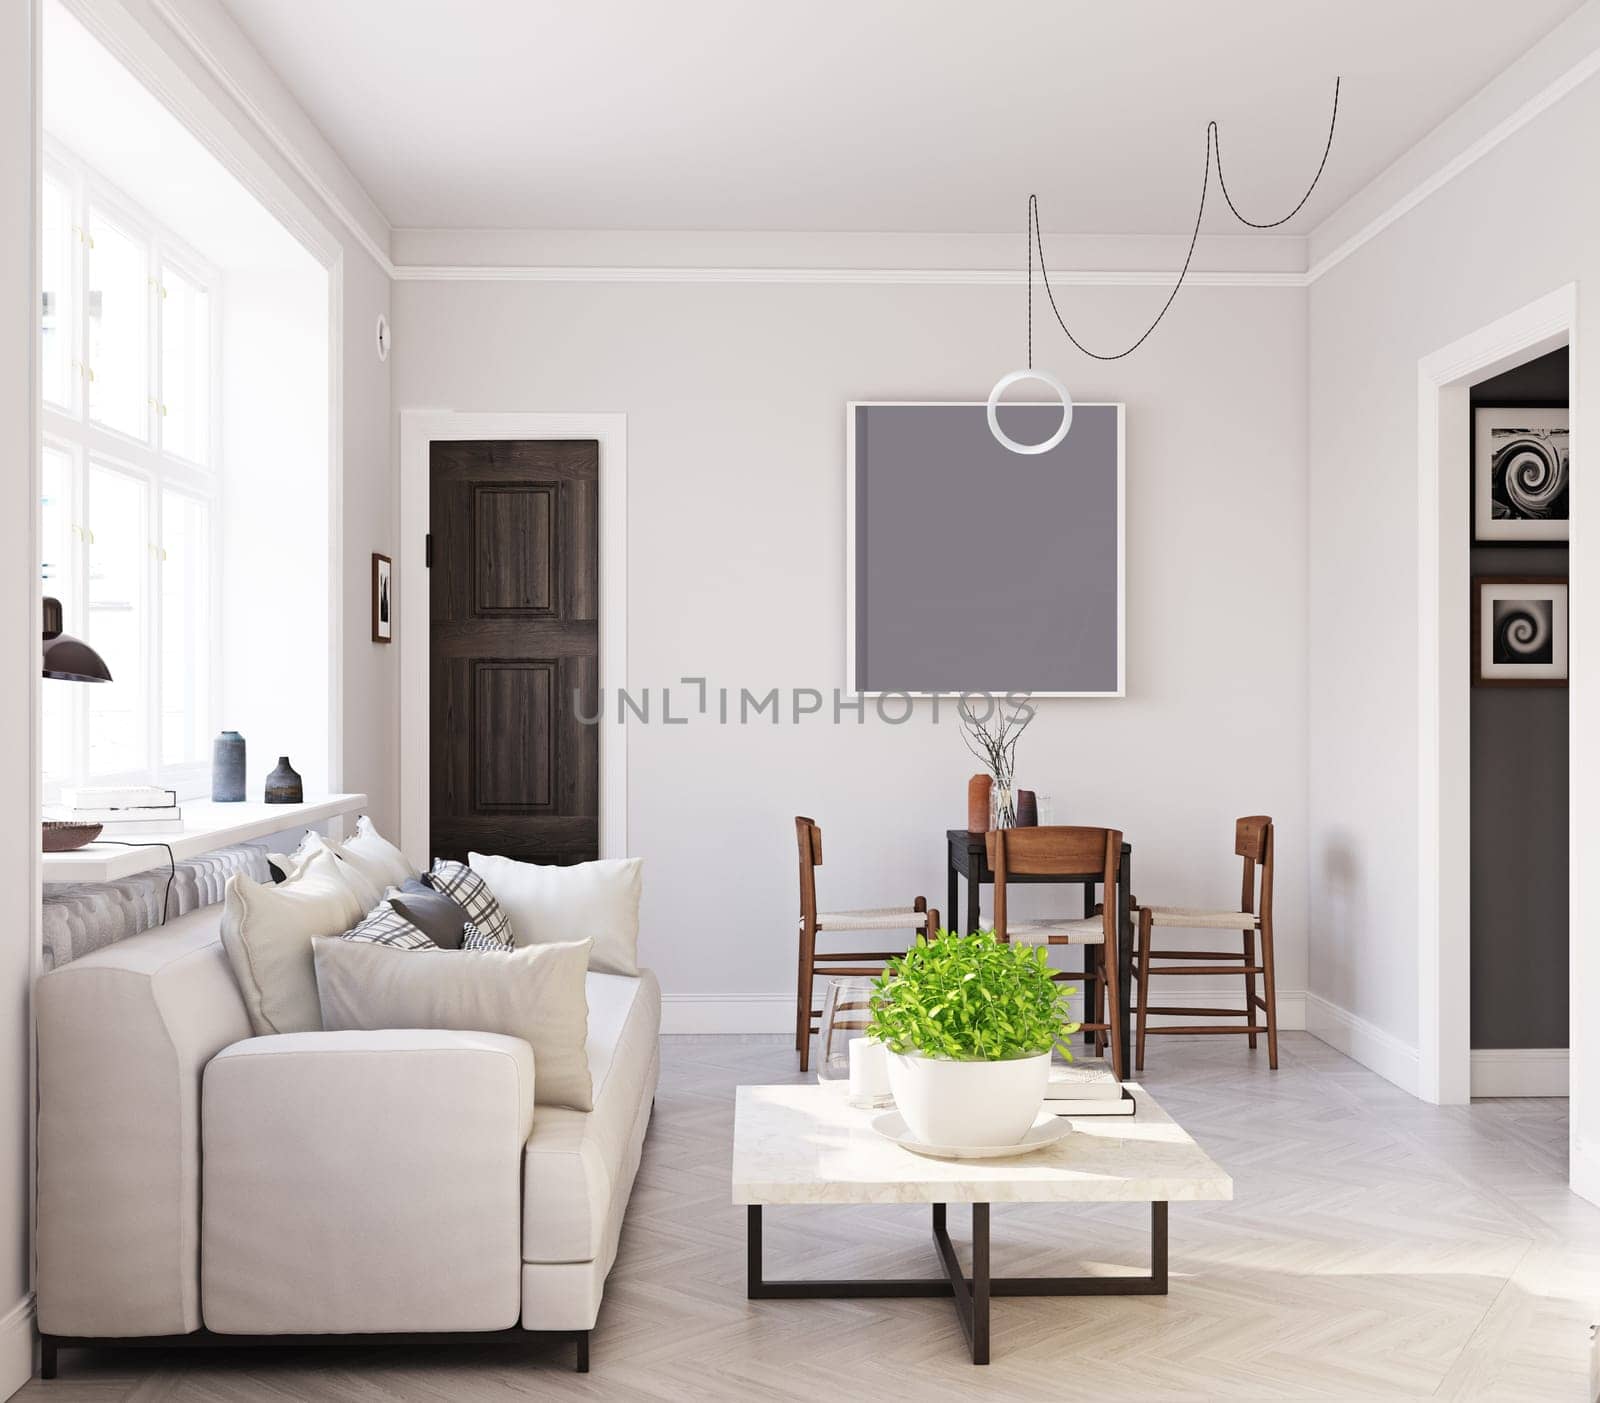 compact scandinavian style living room design. 3d rendering concept